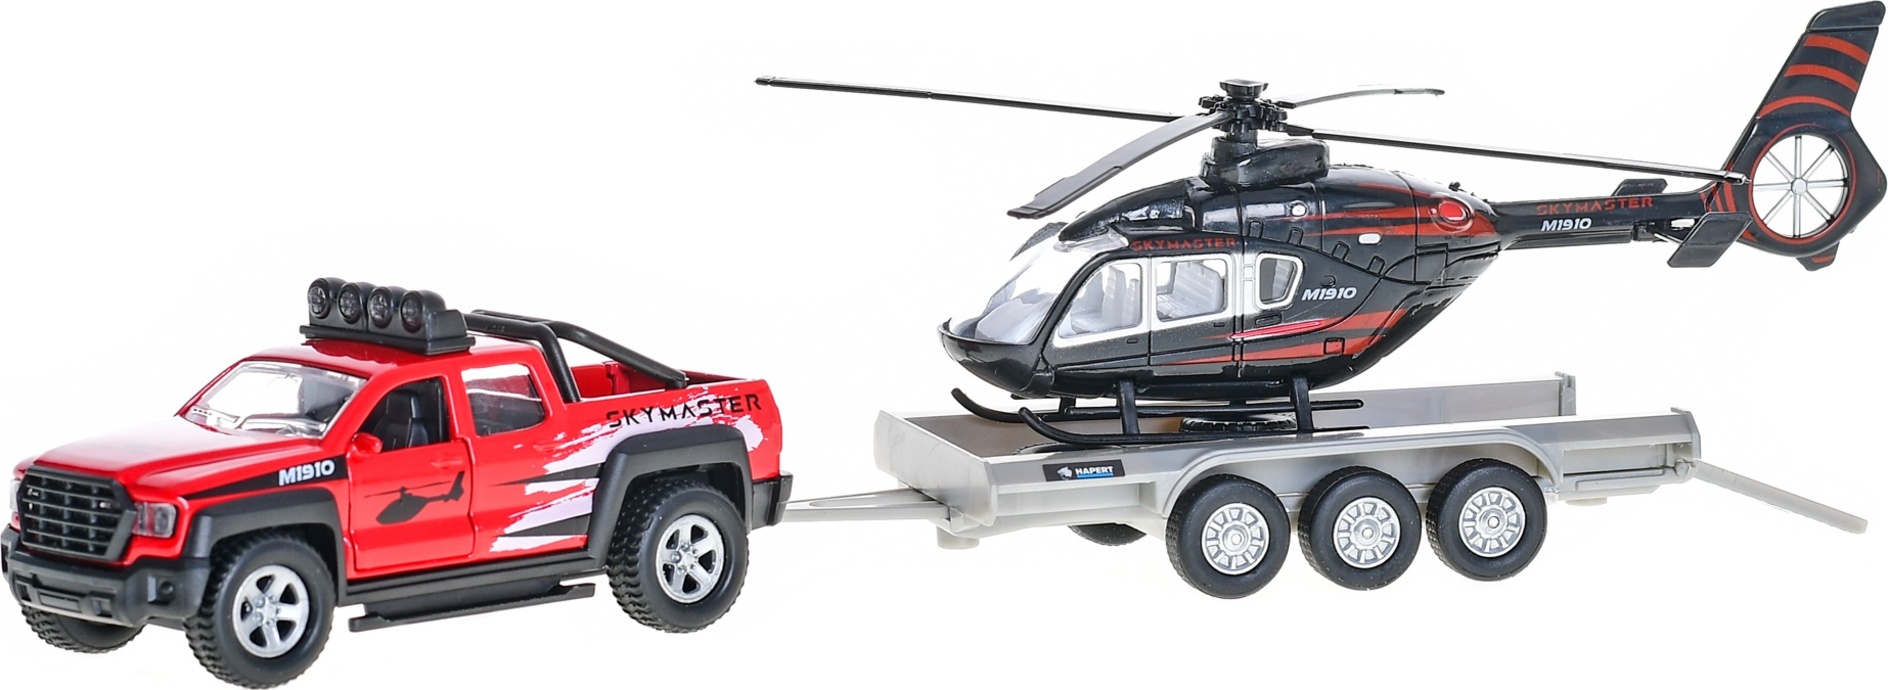 Kids Globe Traffic auto terénní 13cm kov na zpětný chod s přívěsem + helikoptéra 20cm